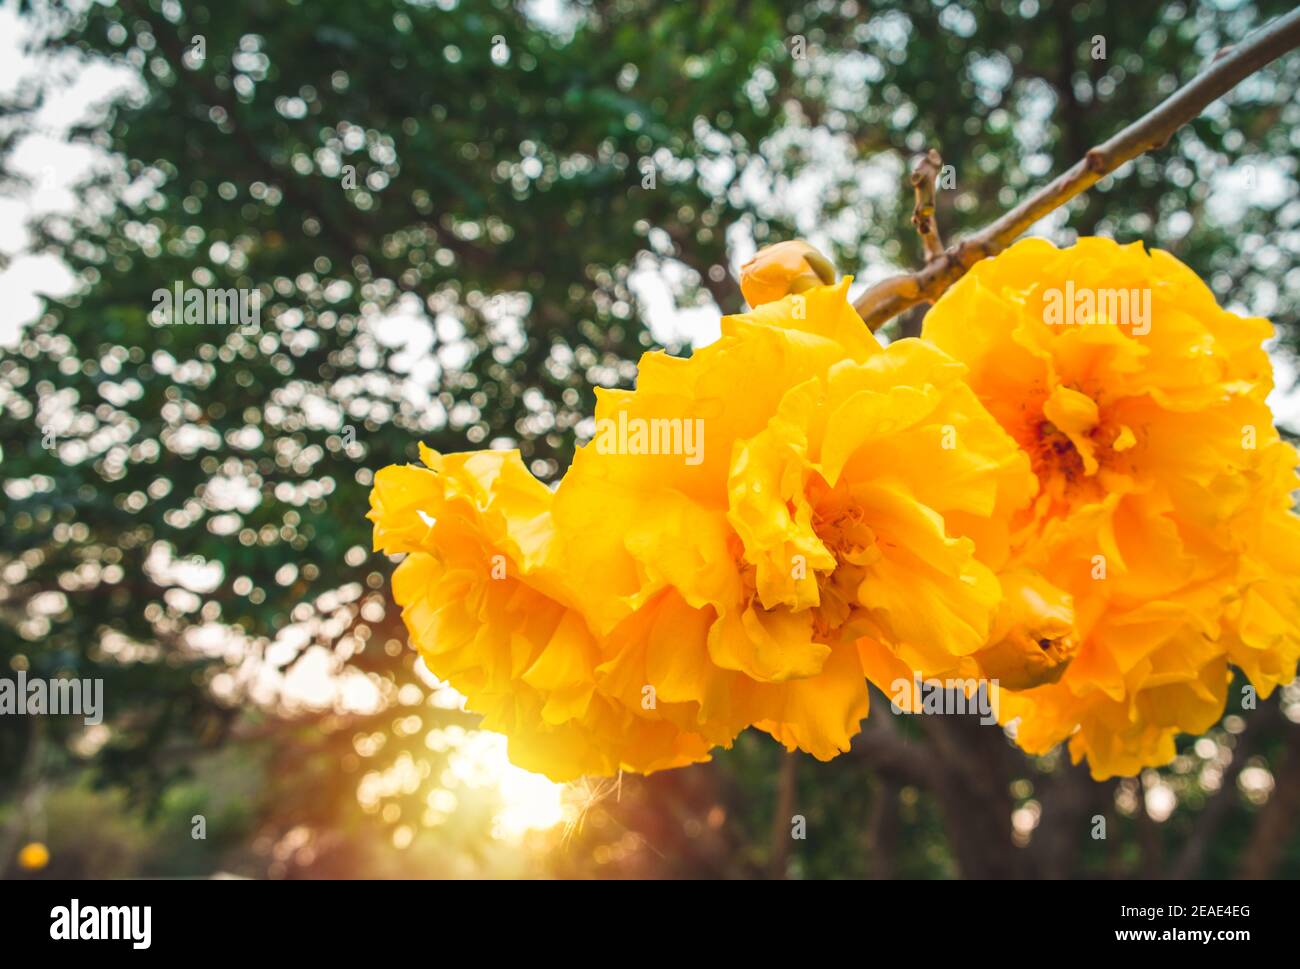 Cochlospermum regium,yellow cotton tree(suphannika:Thai) flower blooming in garden. Stock Photo